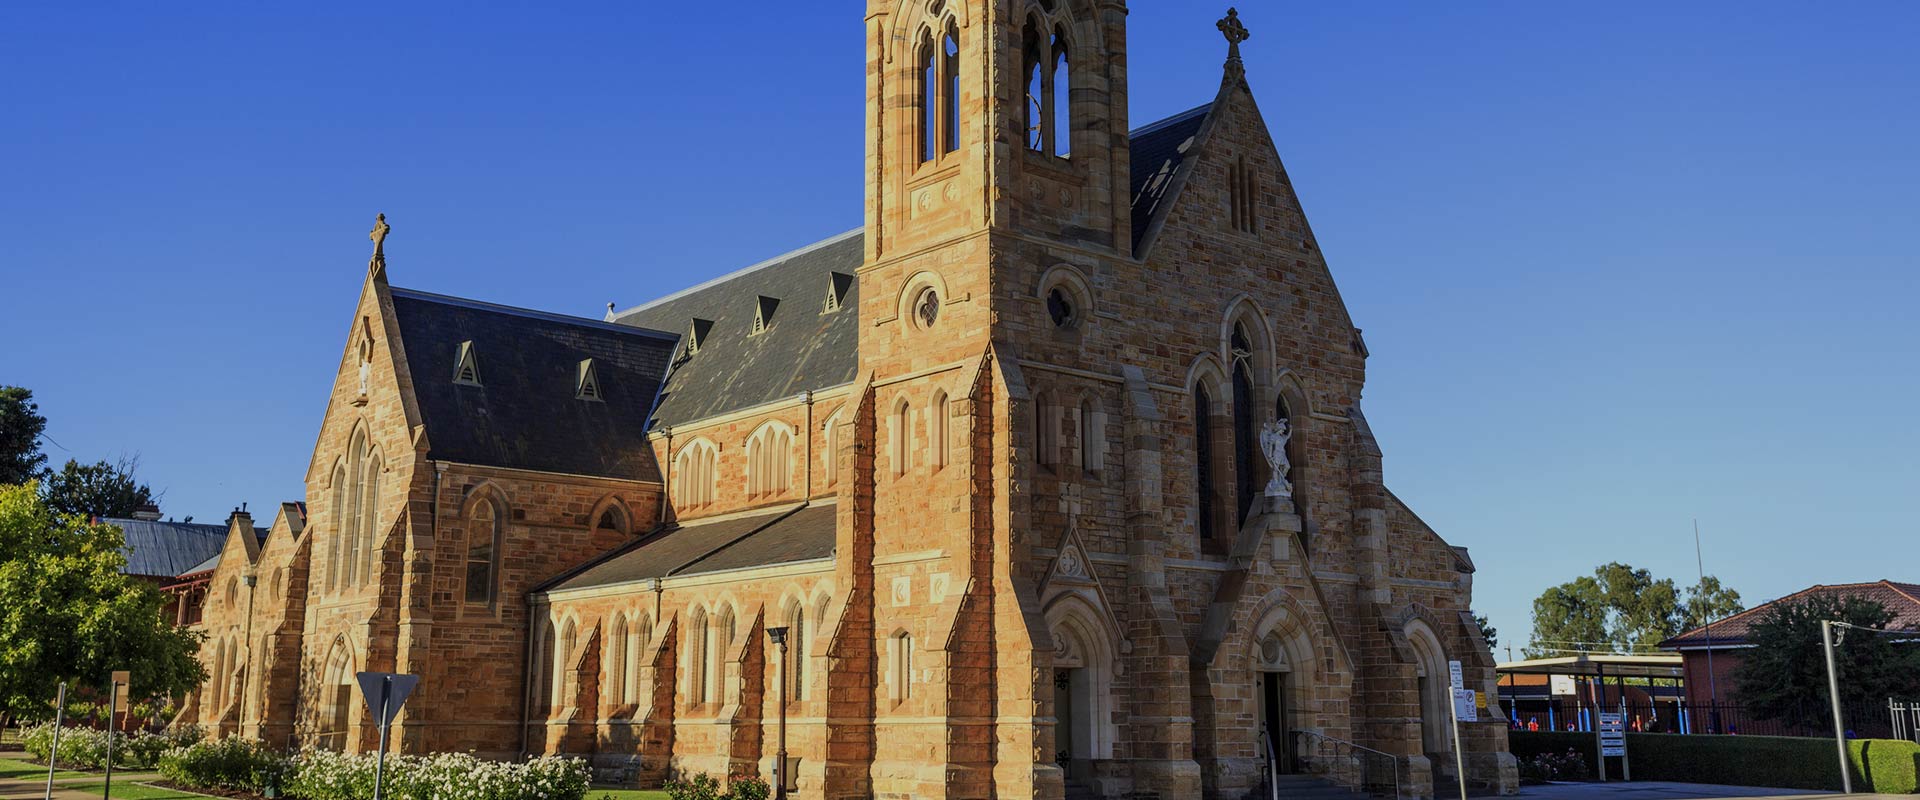 St. Micheal's Church - Wagga Wagga - CRL Australia